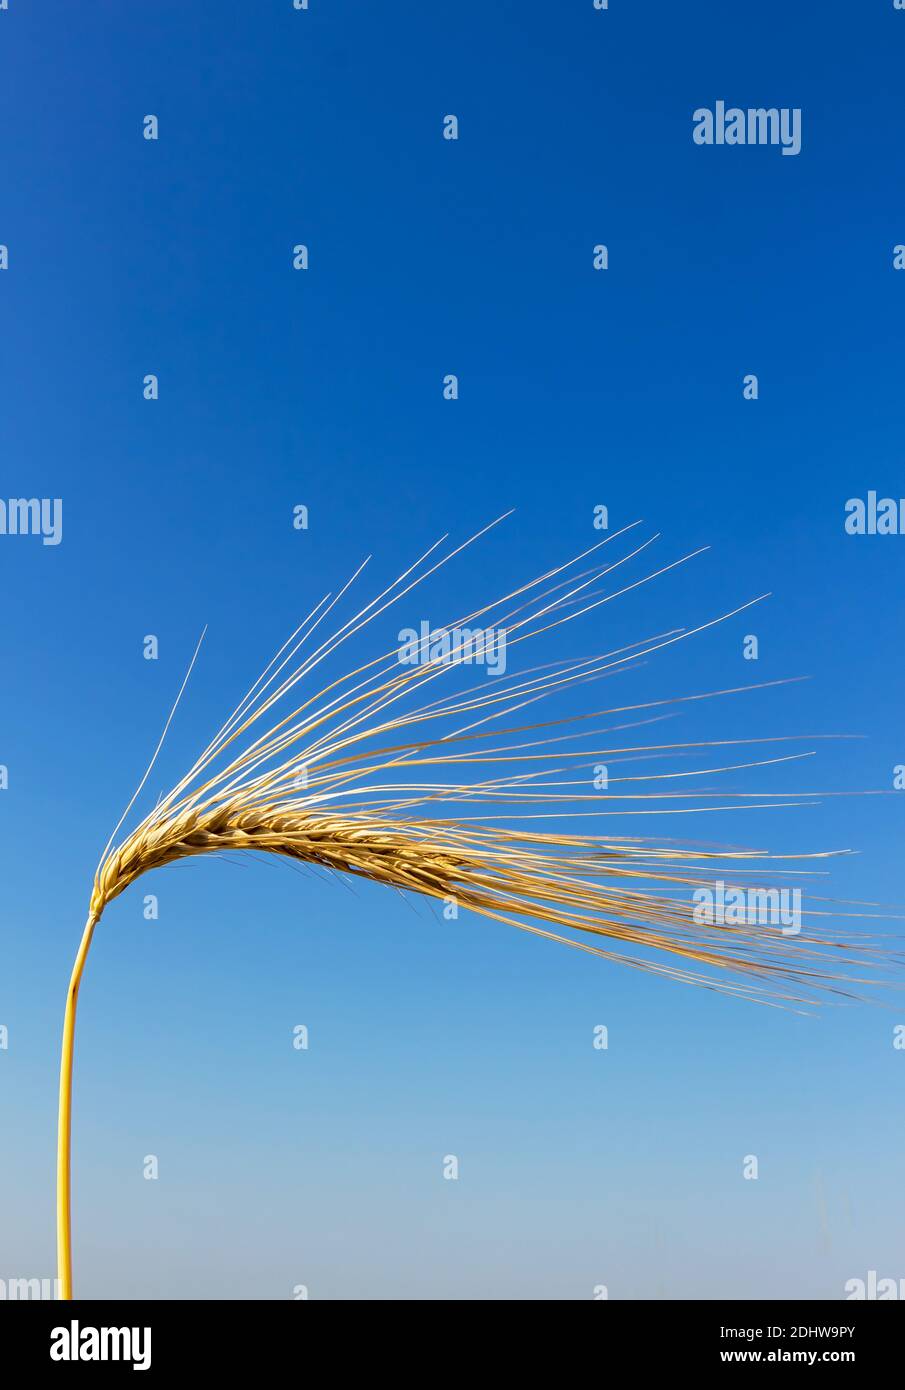 Ein Getreidefeld mit Gerste wartet auf die Ernte. Symbolfoto für Landwirtschaft und gesunde Ernährung. Stock Photo